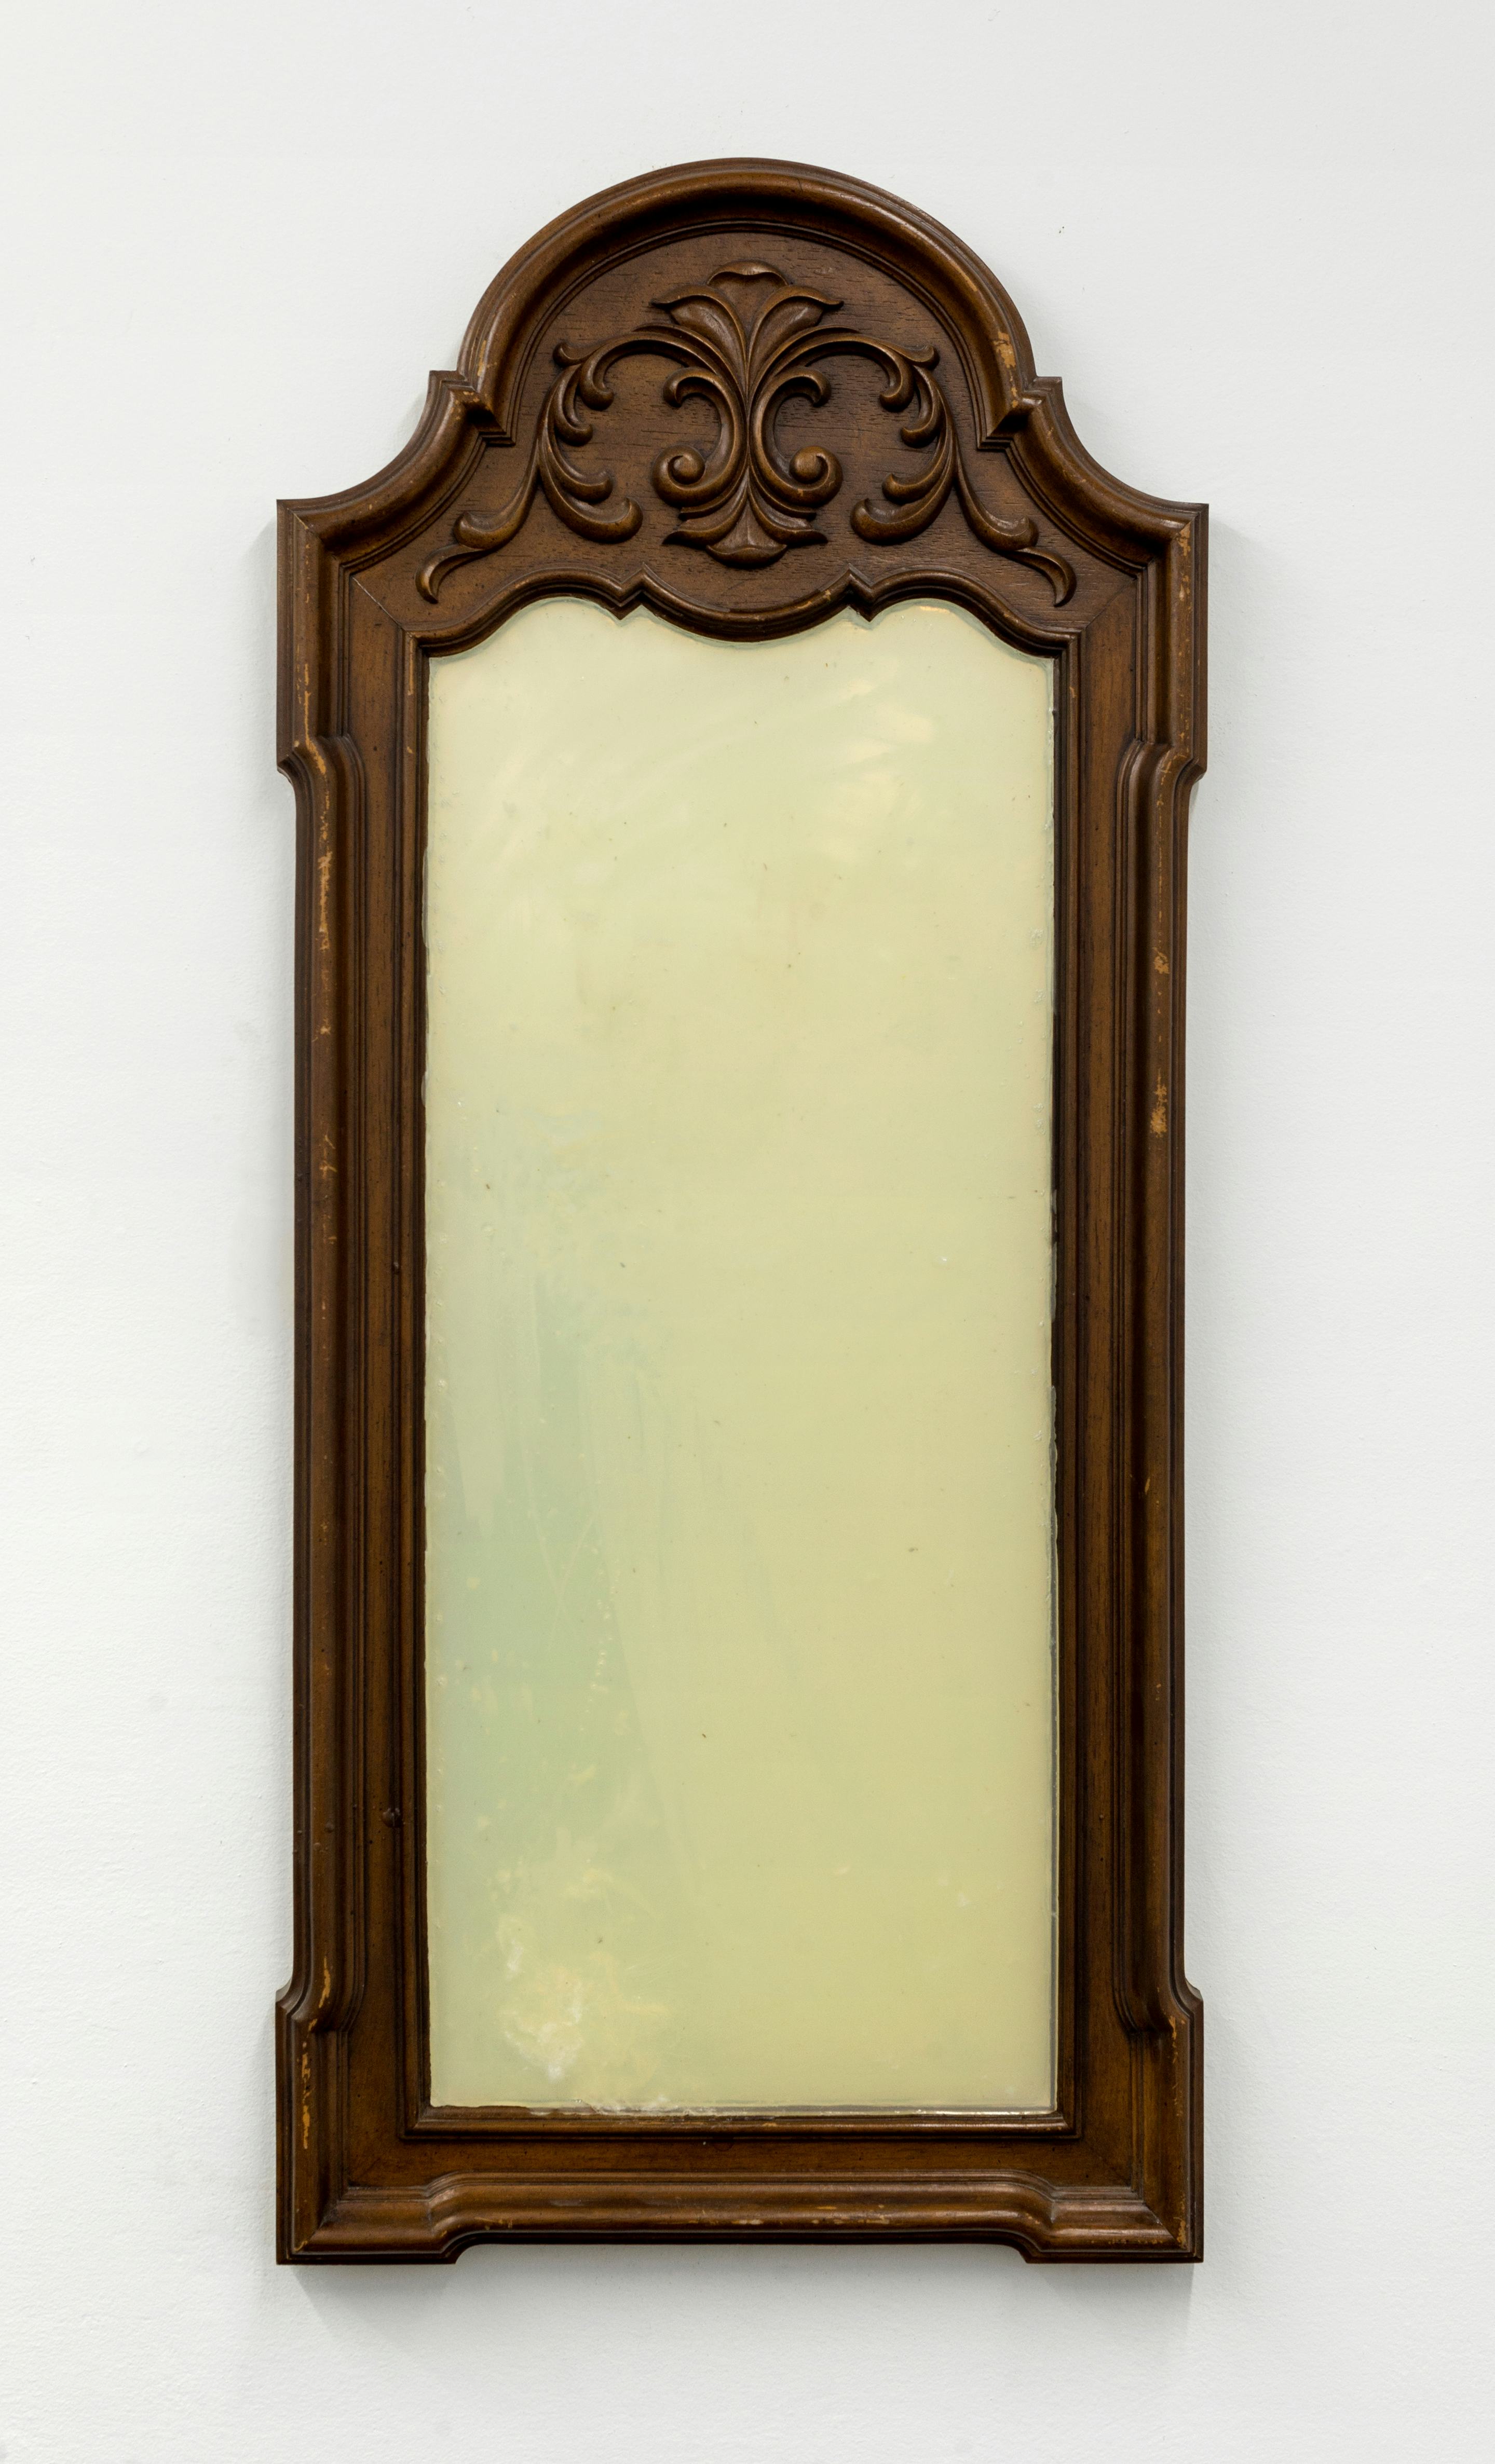 Closer II (2020)
Mirror, soap. 

50.5h x 22.5w x 2d in (128.3h x 57.2w x 5.1d cm)